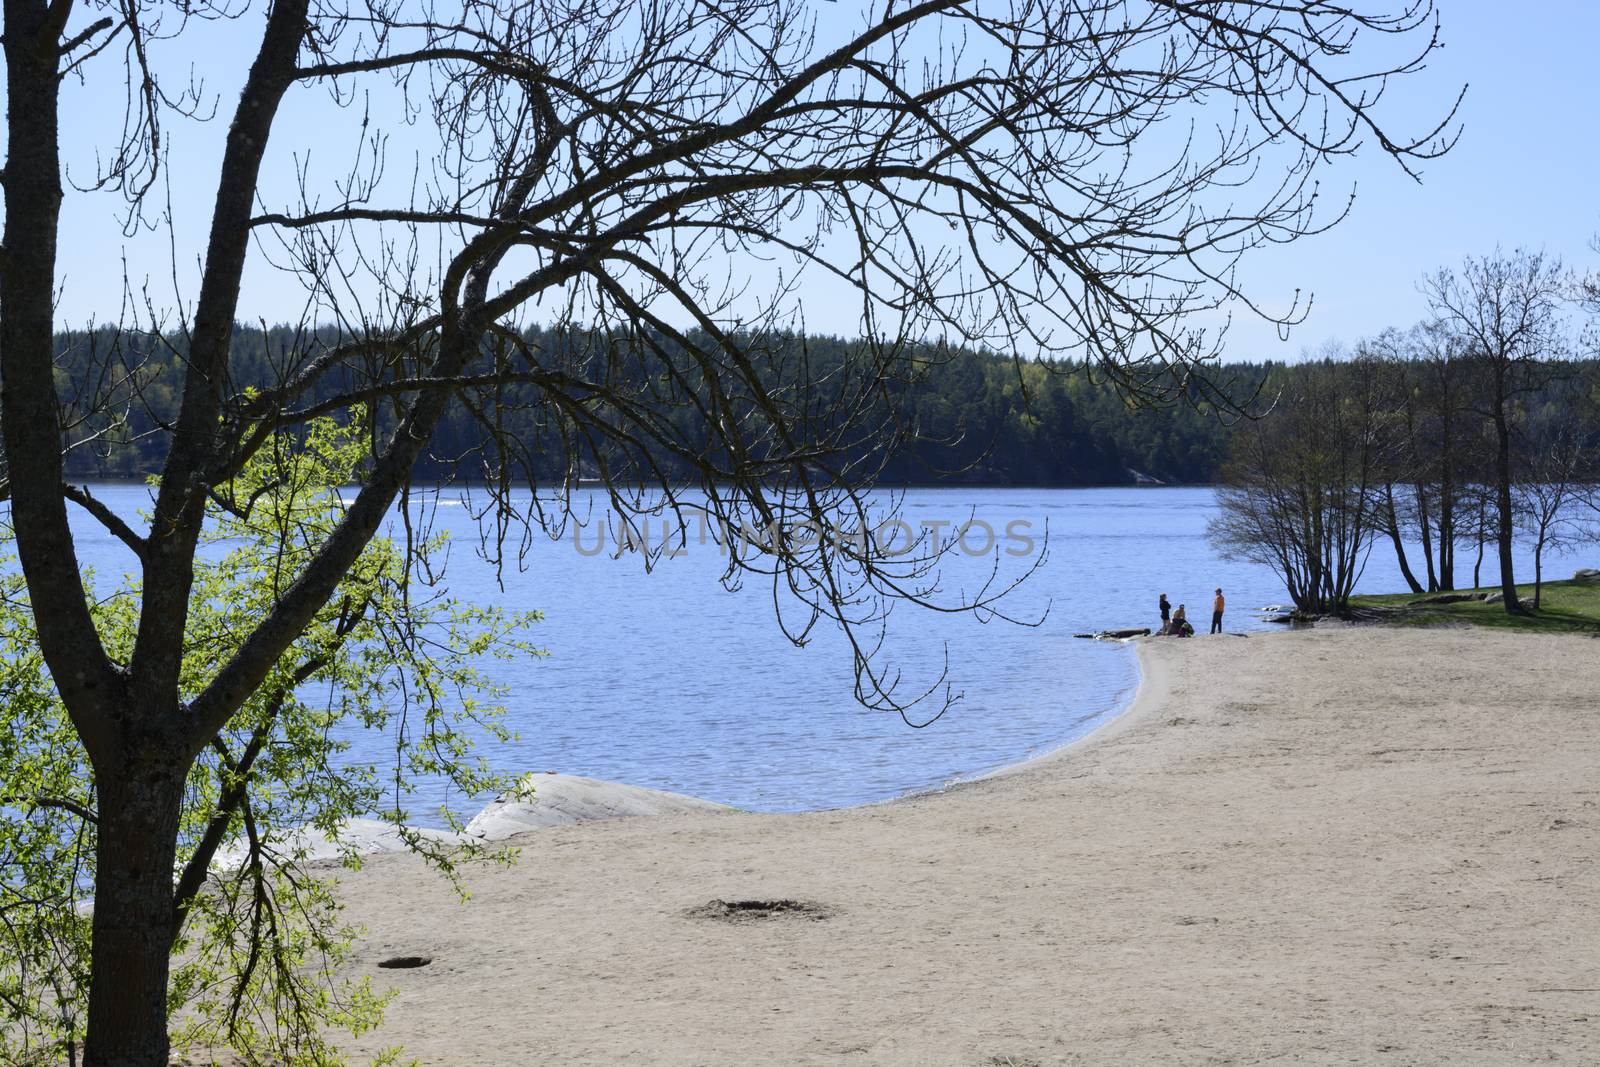 Sandy beach Kanaan, Lake Malaren, west of Stockholm, Sweden, in April